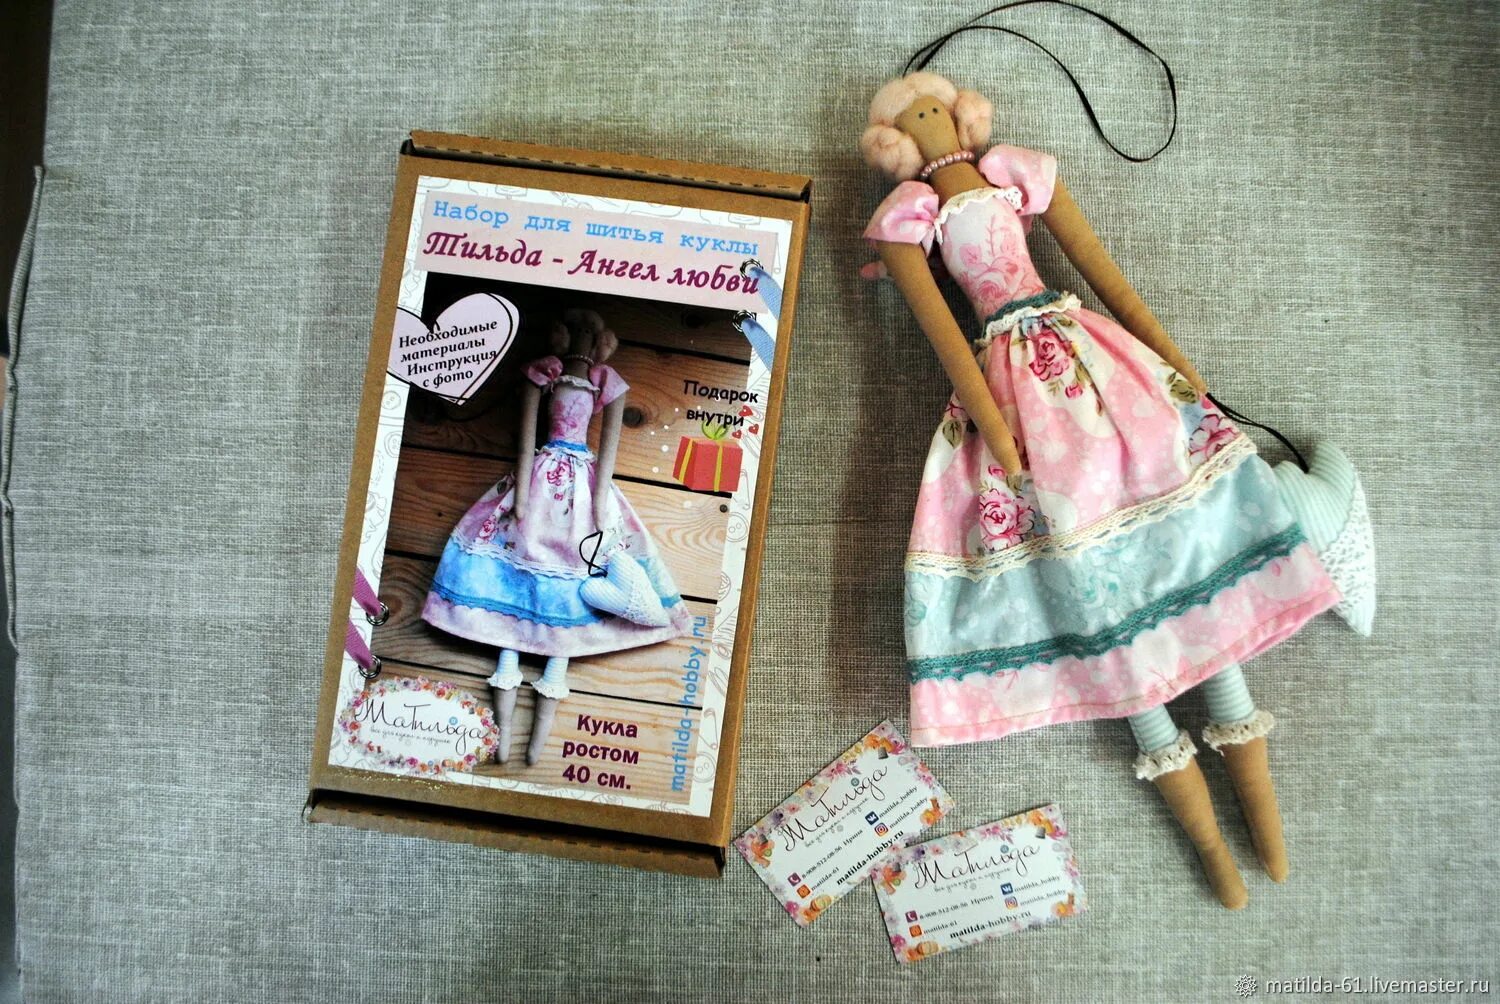 Купить шитье куклы. Набор для пошива куклы. Набор для шитья куклы. Набор для шитья куклы Тильда. Tilda набор для шитья.